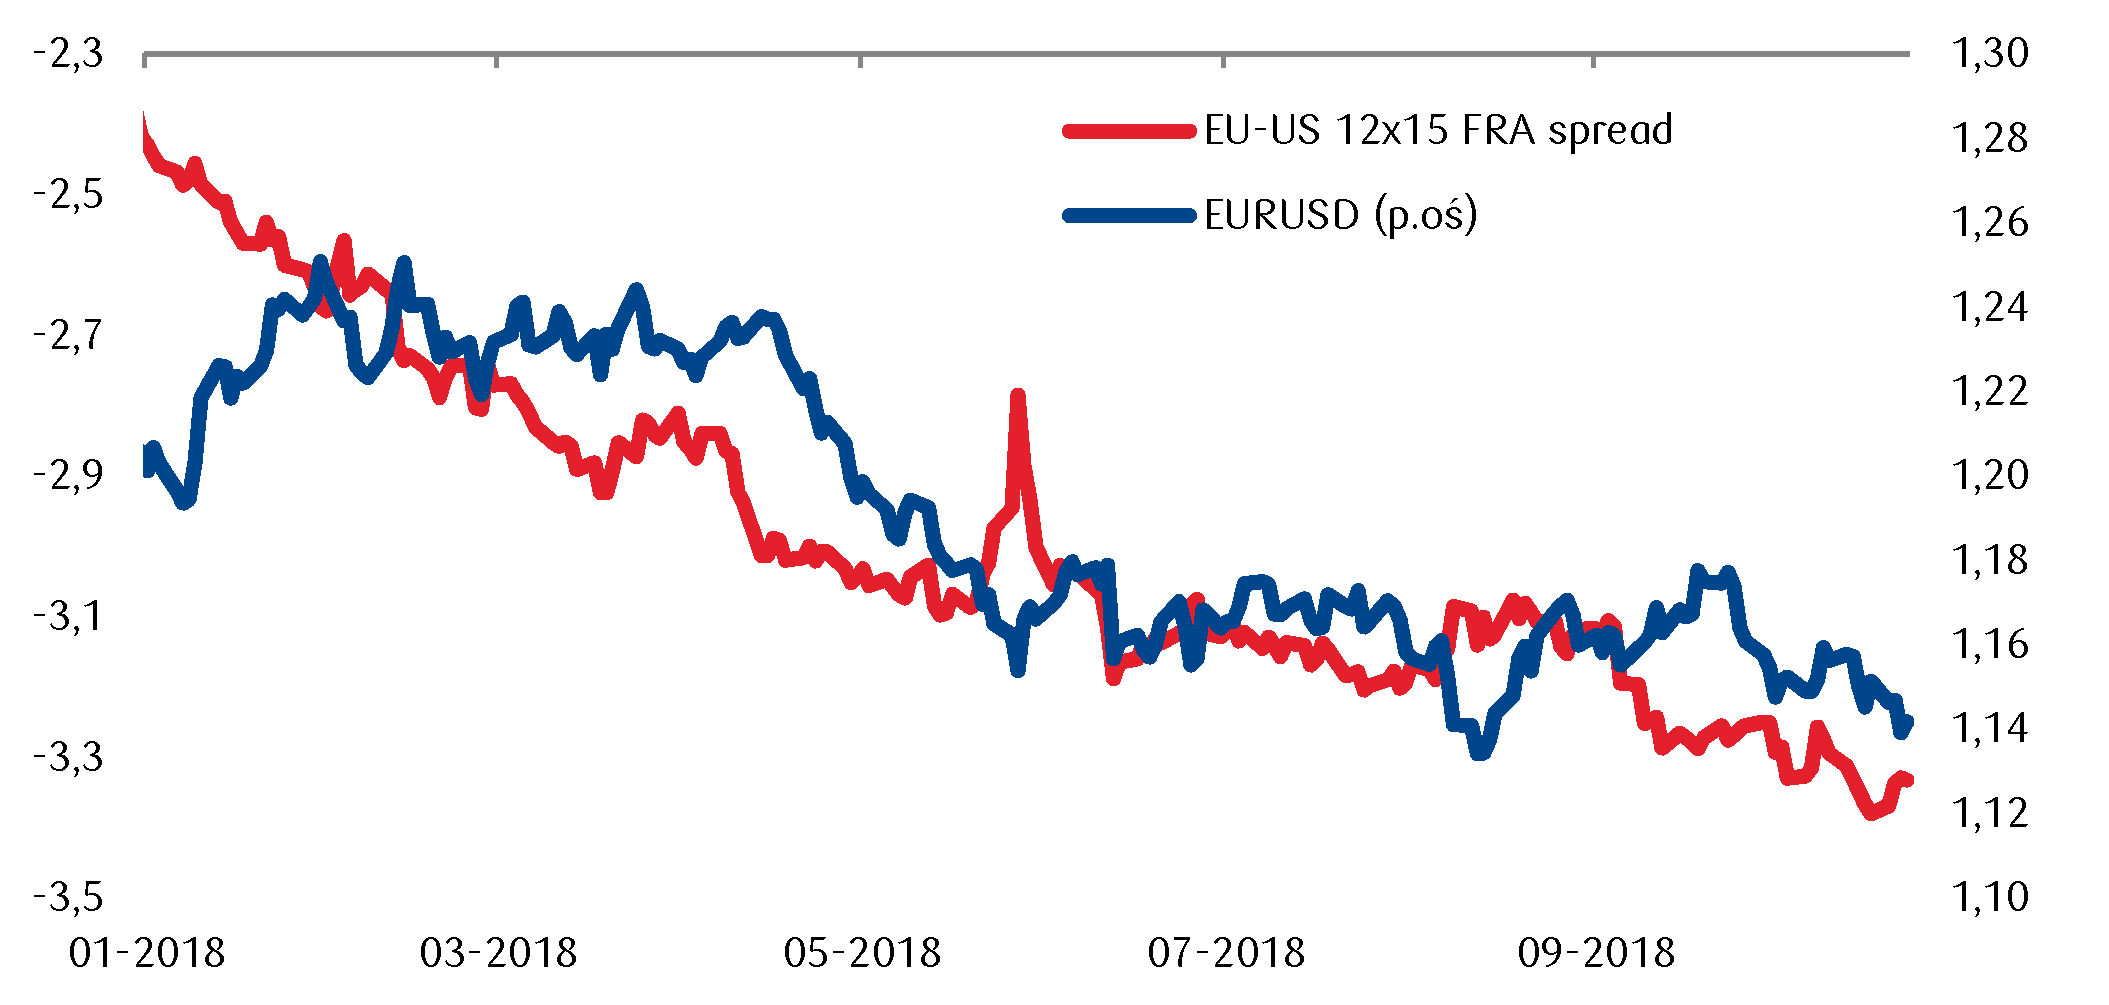 Oczekiwania wobec zmian stóp procentowych w strefie euro oraz USA wskazują na potencjał do utrzymania siły dolara wobec euro